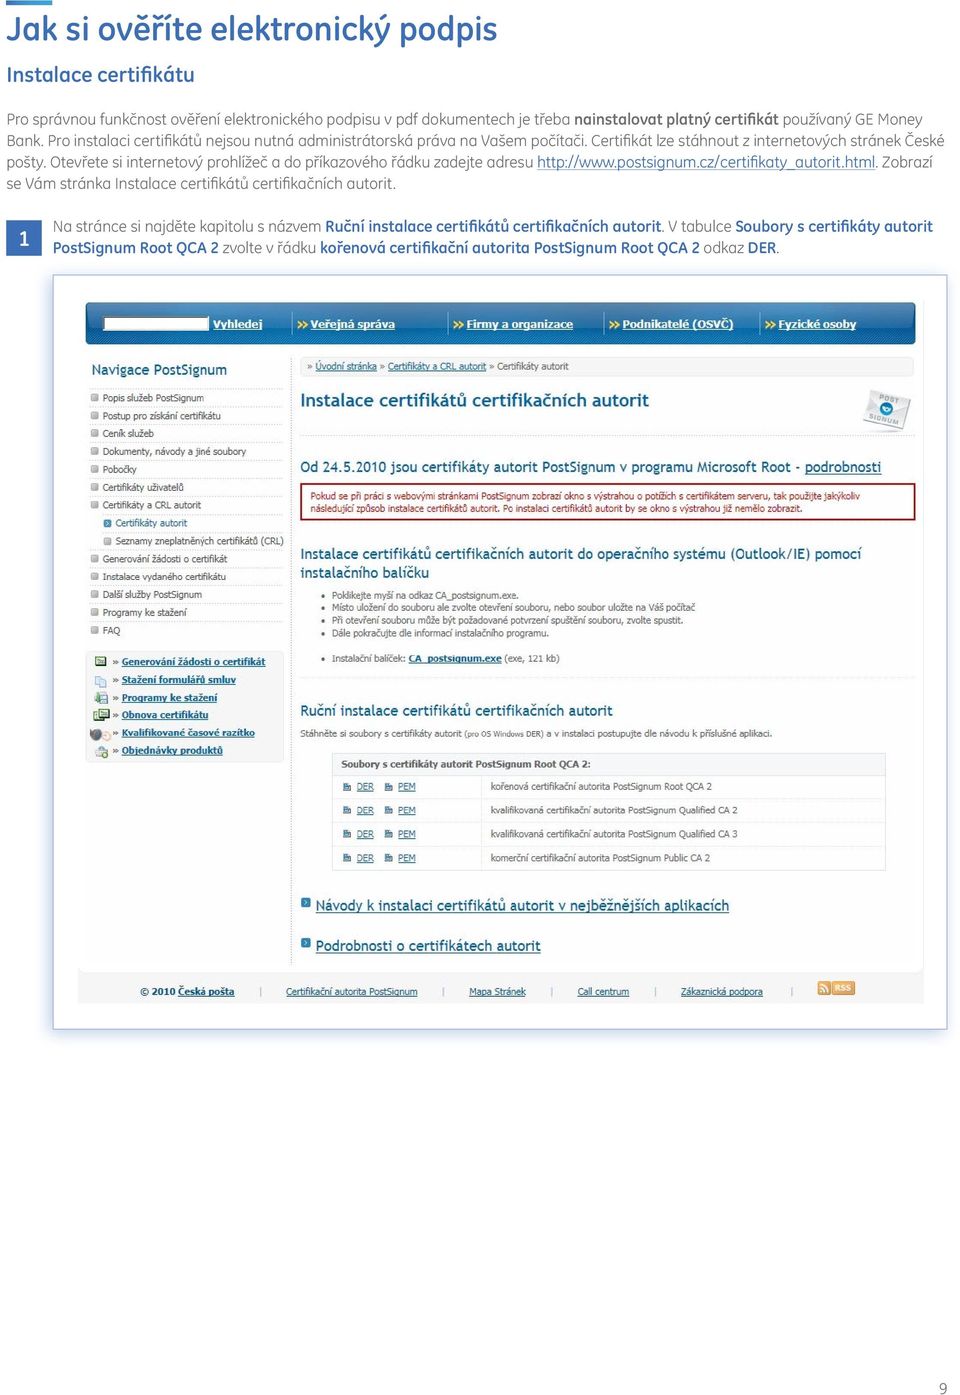 Otevřete si internetový prohlížeč a do příkazového řádku zadejte adresu http://www.postsignum.cz/certifikaty_autorit.html. Zobrazí se Vám stránka Instalace certifikátů certifikačních autorit.